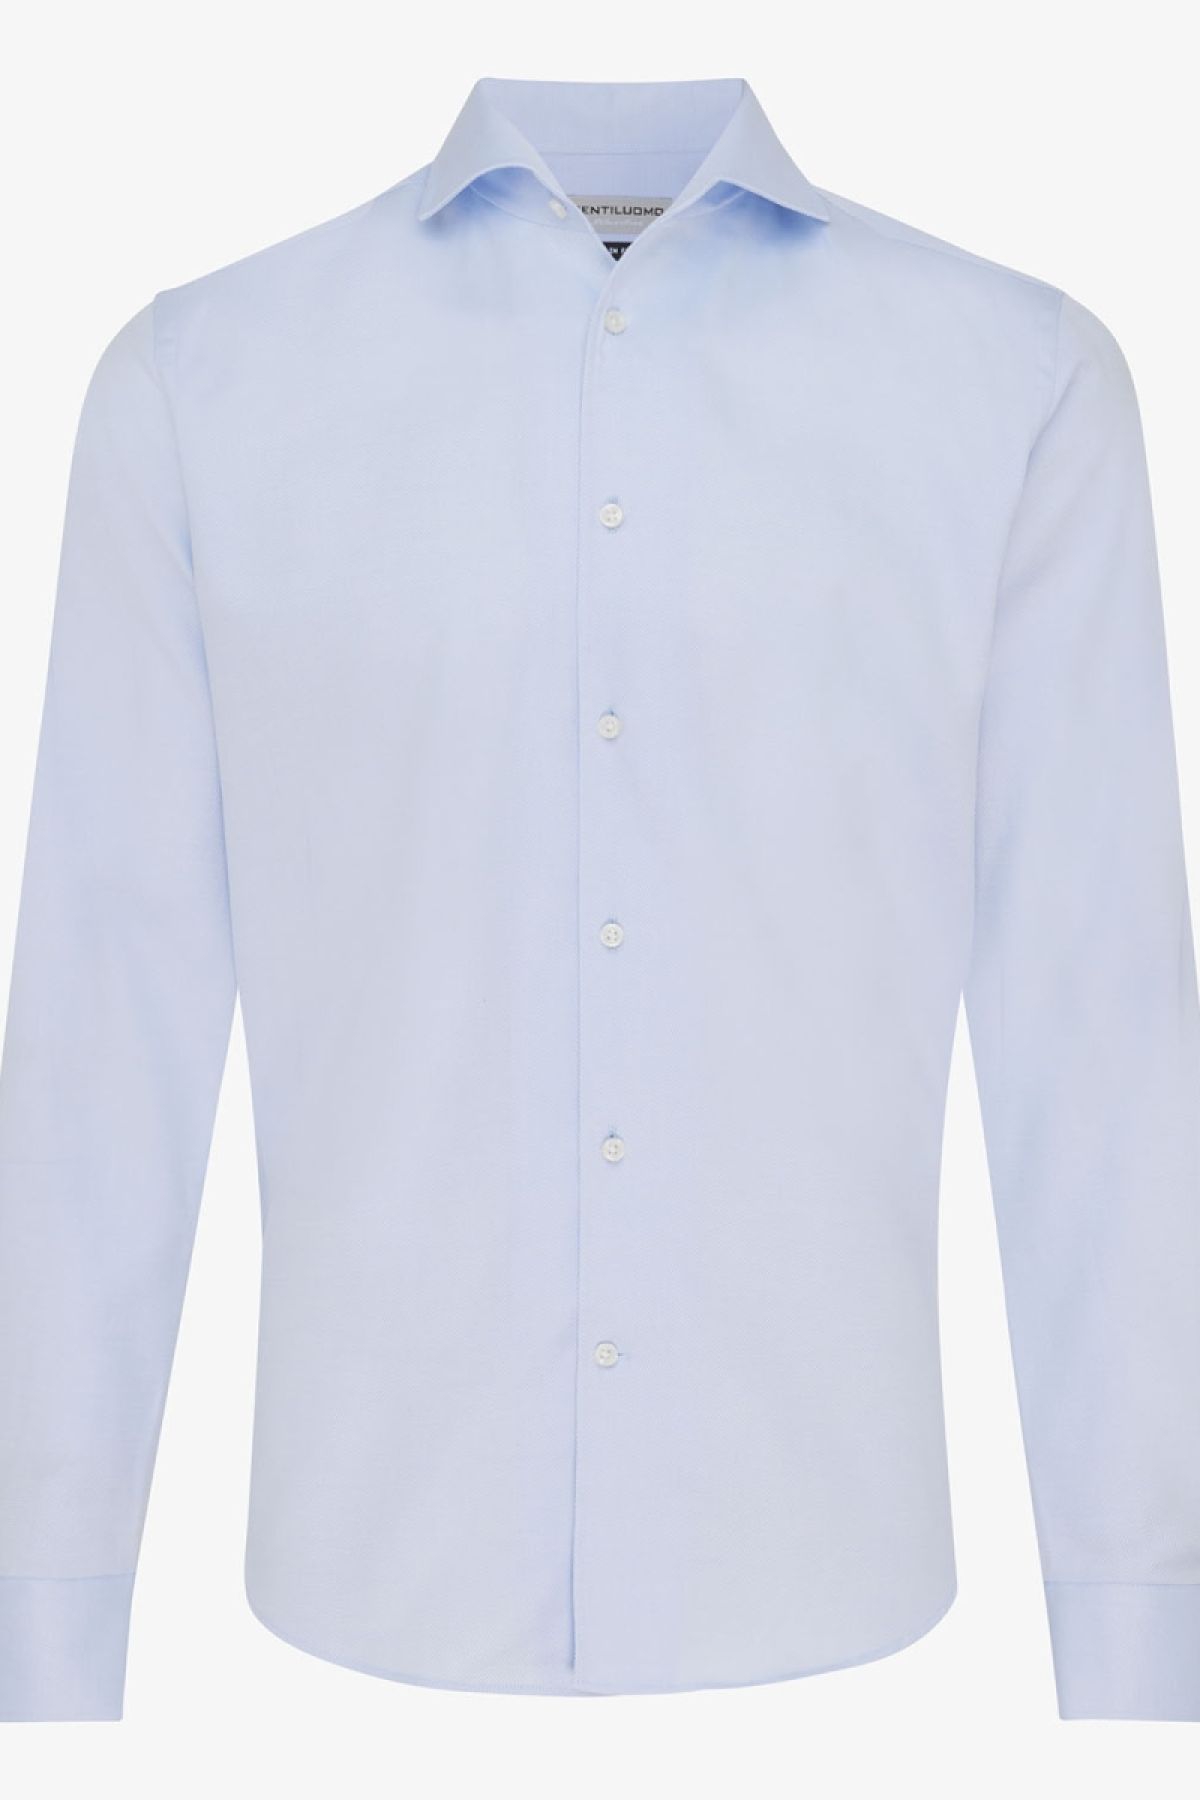 Travel overhemd one-piece collar lichtblauw